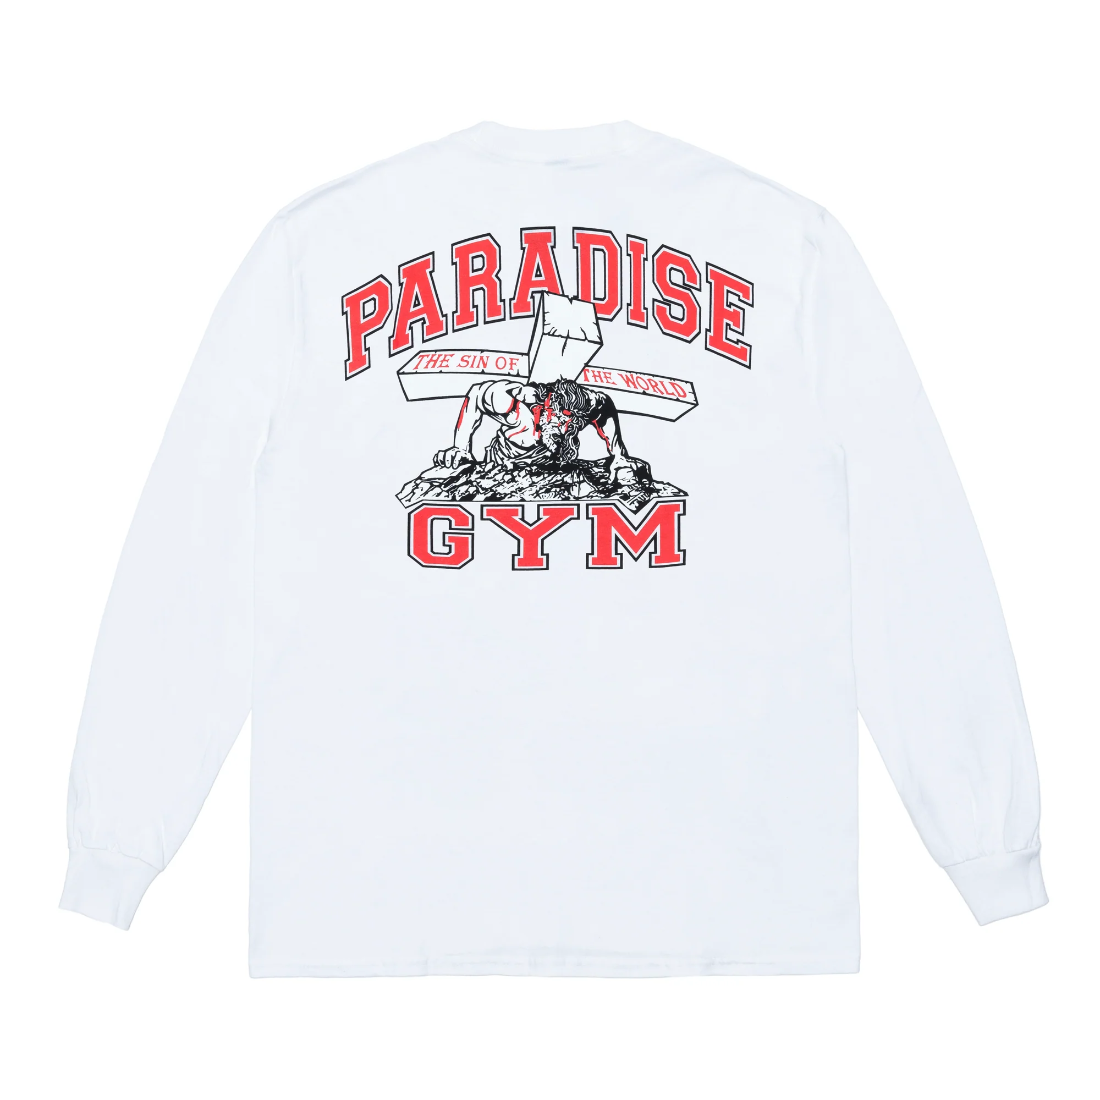 【PARADIS3】Paradise Gym LsTee - White